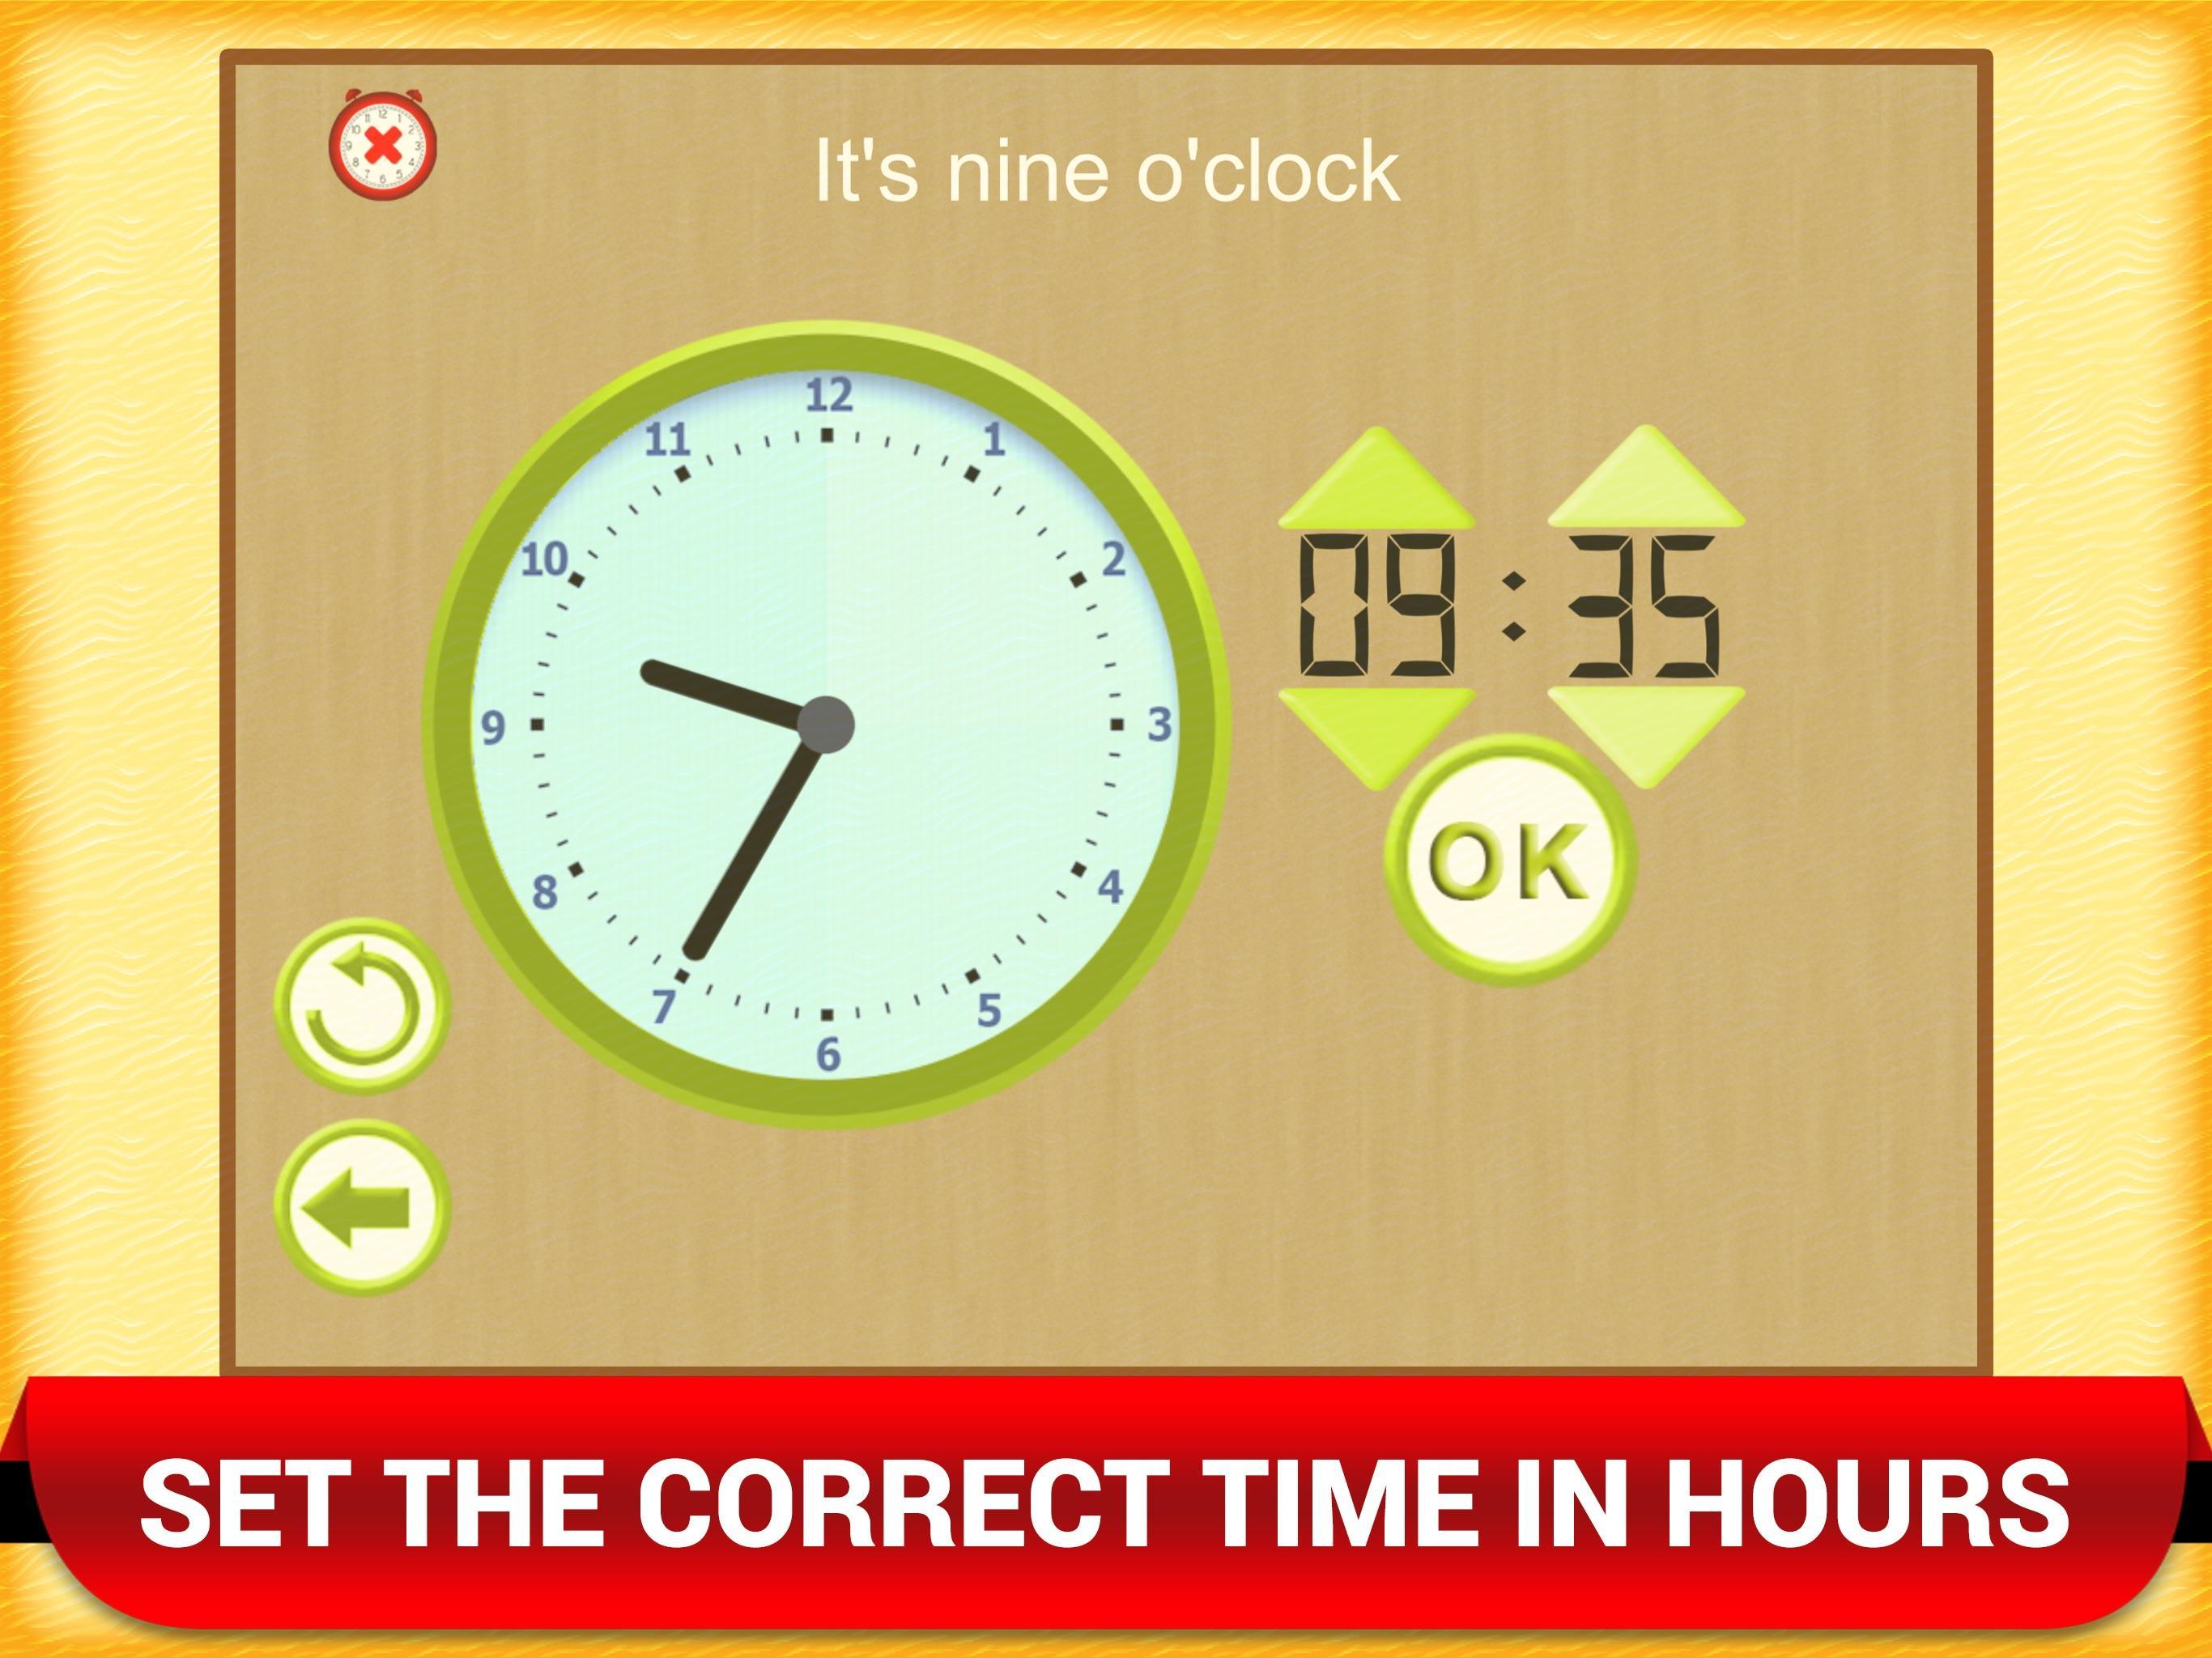 В котором часу будет играть. Игра часы. Часы из игры. Time Clock game for Kids. Приложение Clock time.